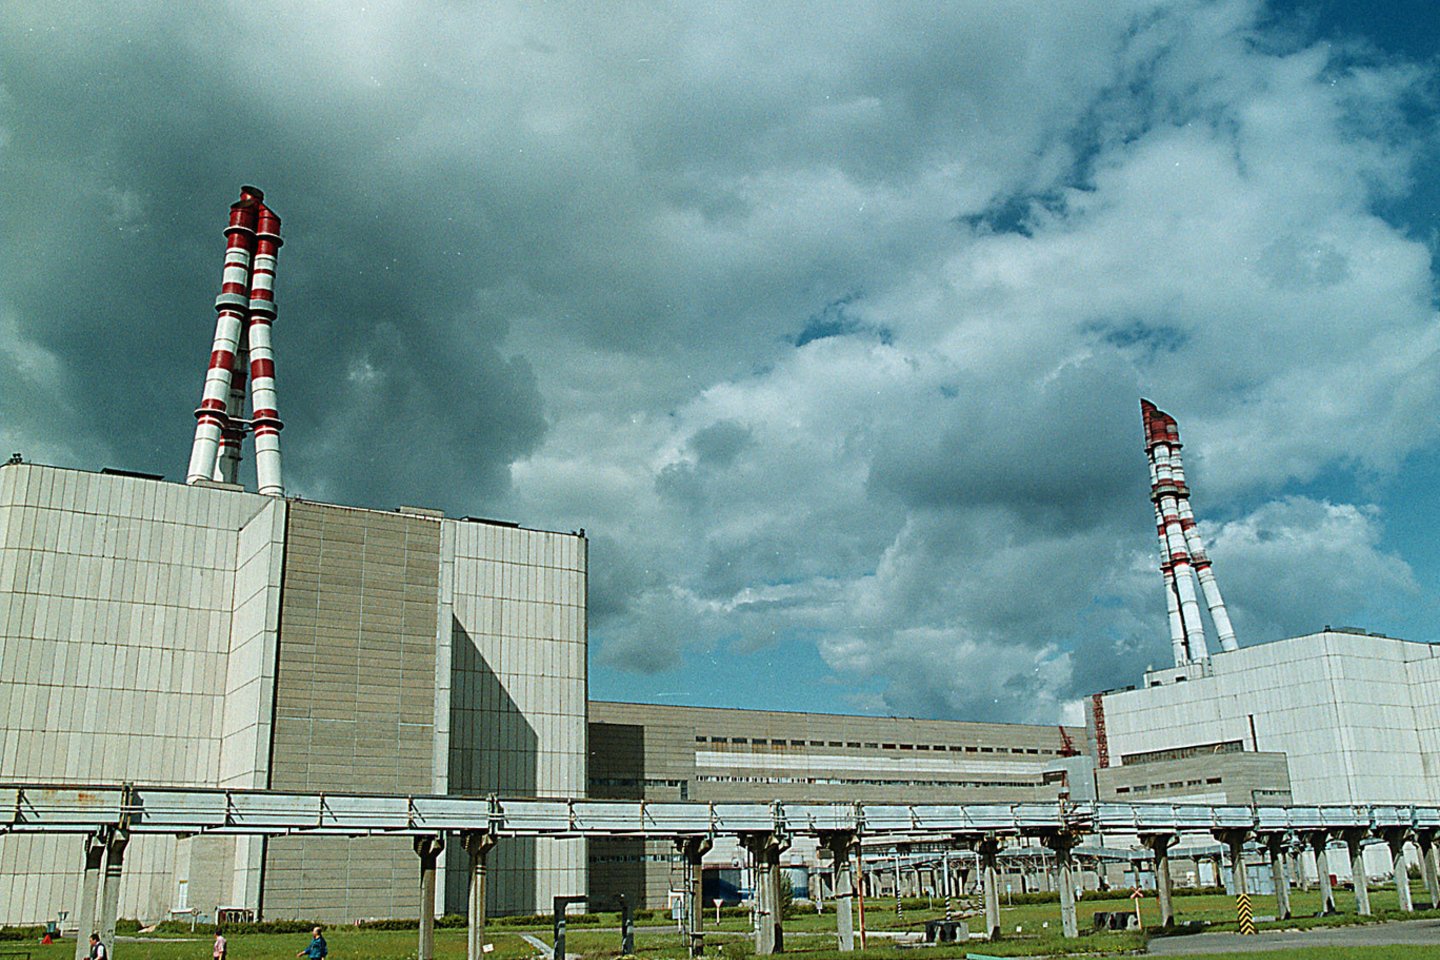 Penktadienį iš Ignalinos atominės elektrinės (IAE) 2-ojo energijos bloko į laikinąją saugyklą buvo išvežtos paskutinės nepažeisto panaudoto branduolinio kuro rinklės.<br>R.Jurgaičio nuotr.